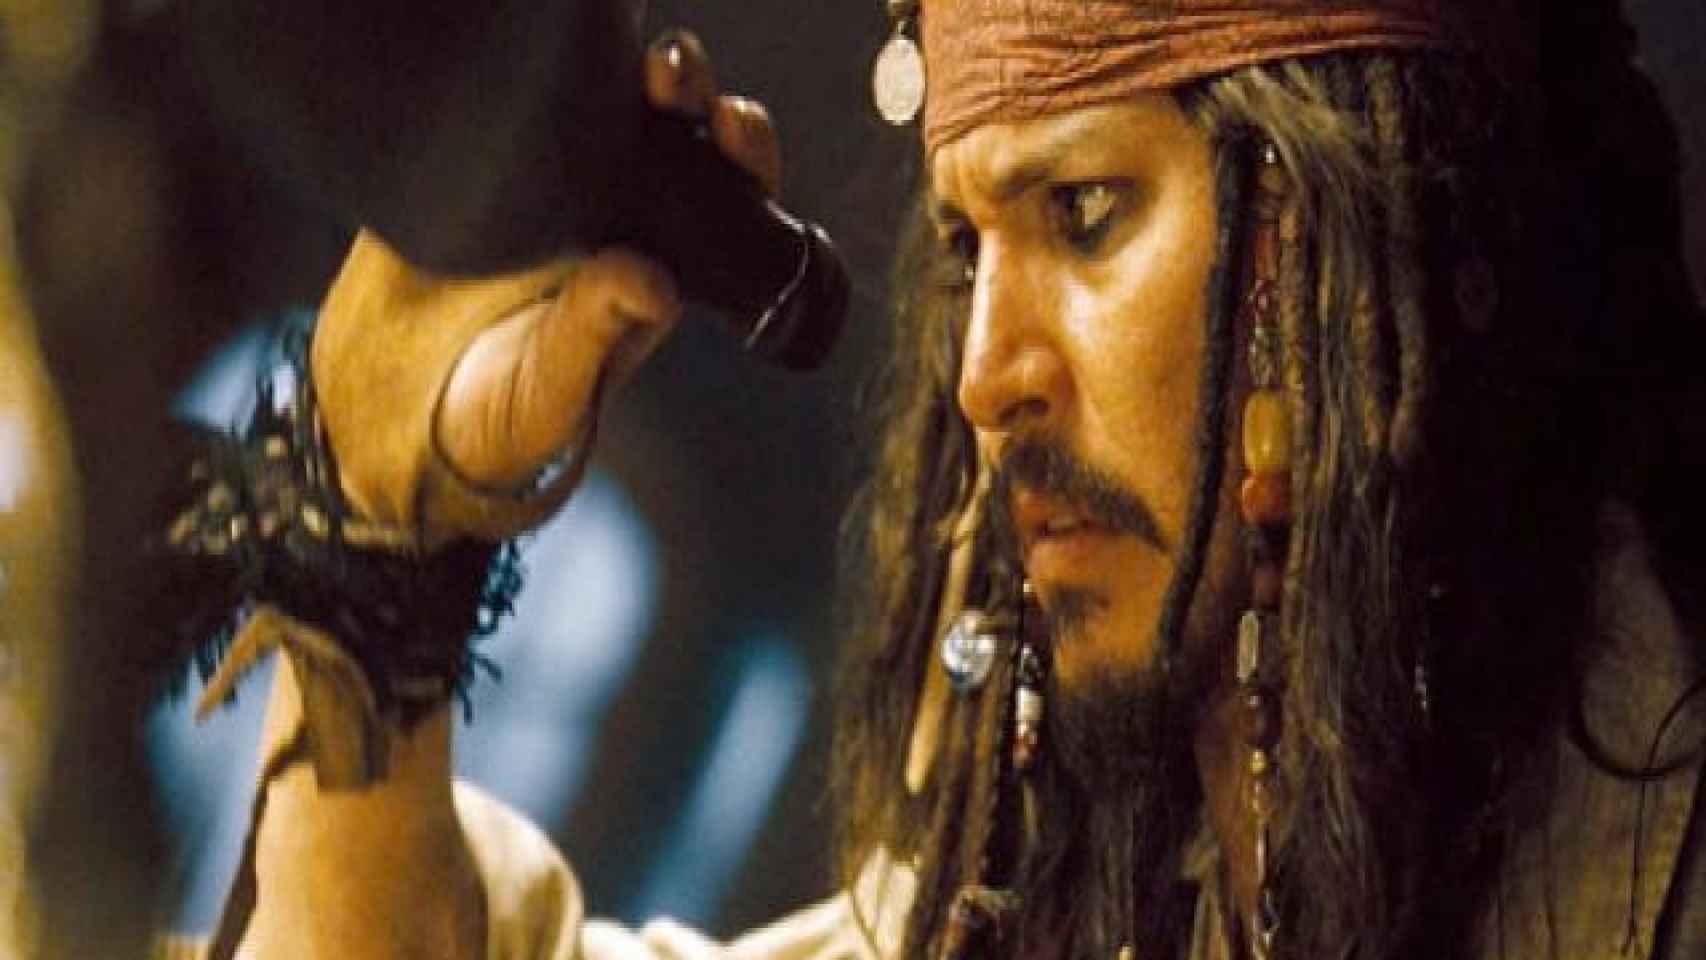 Fotograma de la película Piratas del Caribe. Su protagonista, Jack Sparrow, vive pegado a una botella de ron.